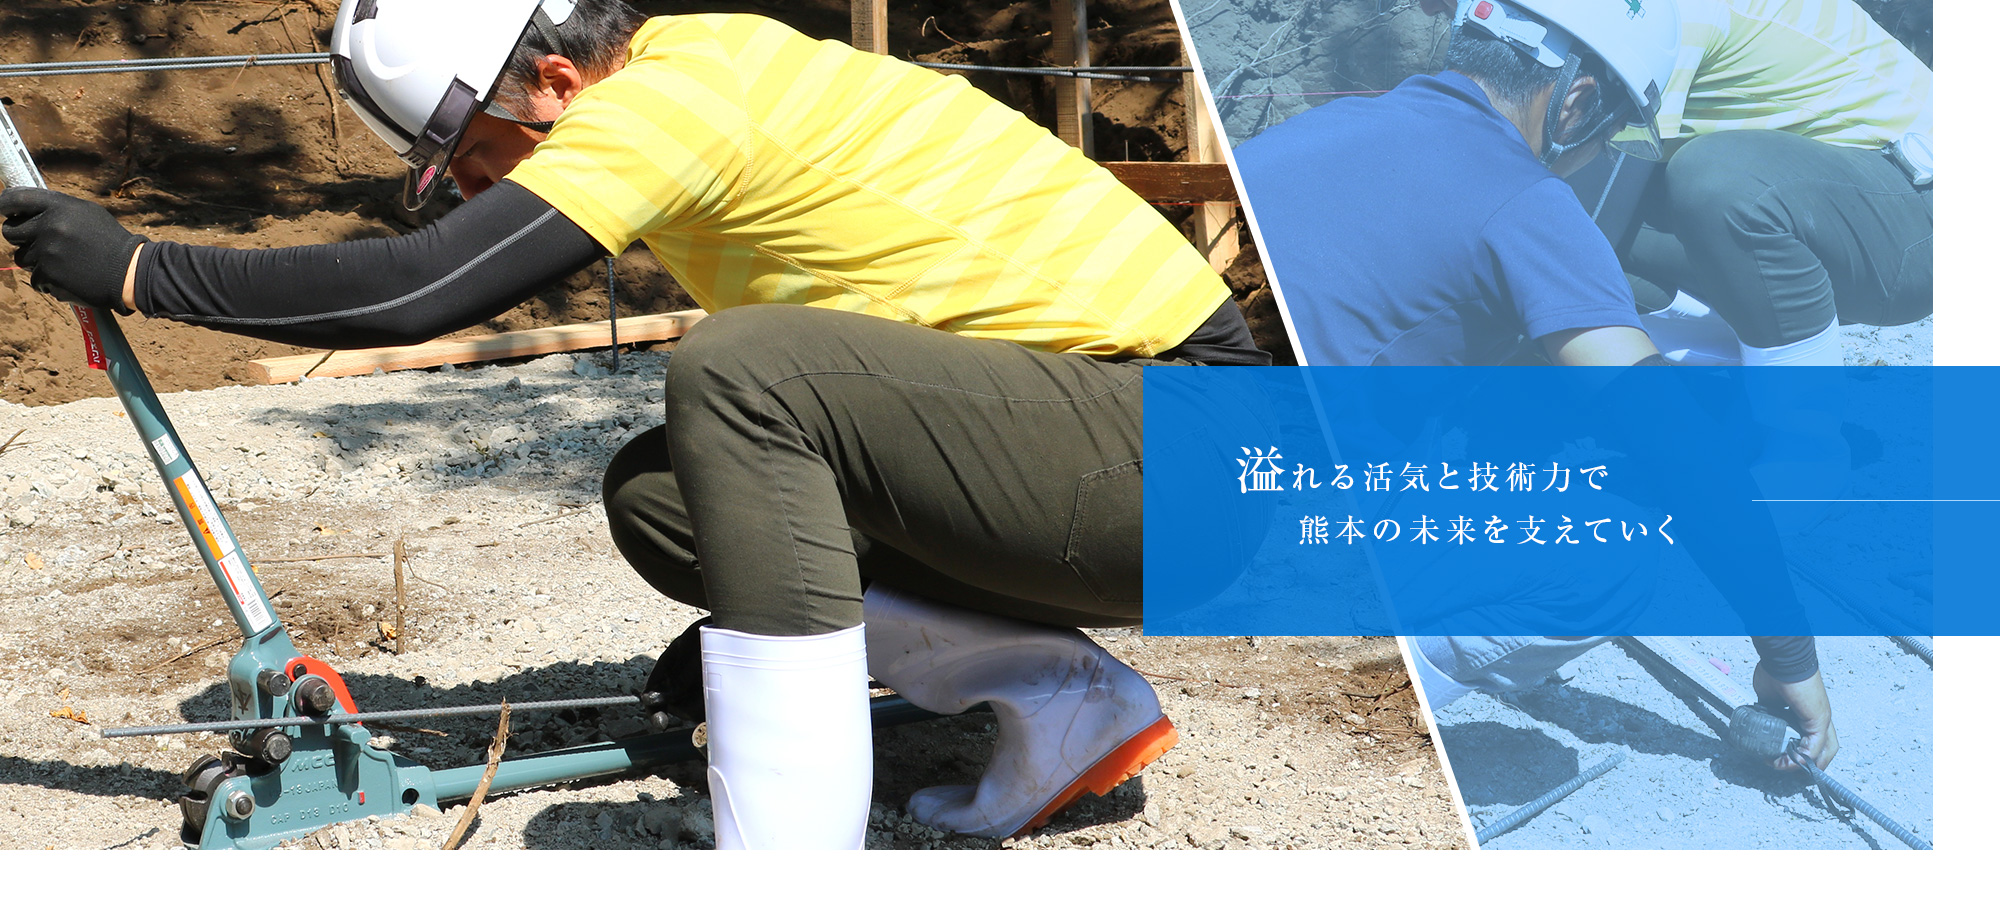 溢れる活気と高い技術力で熊本の未来を支えていく